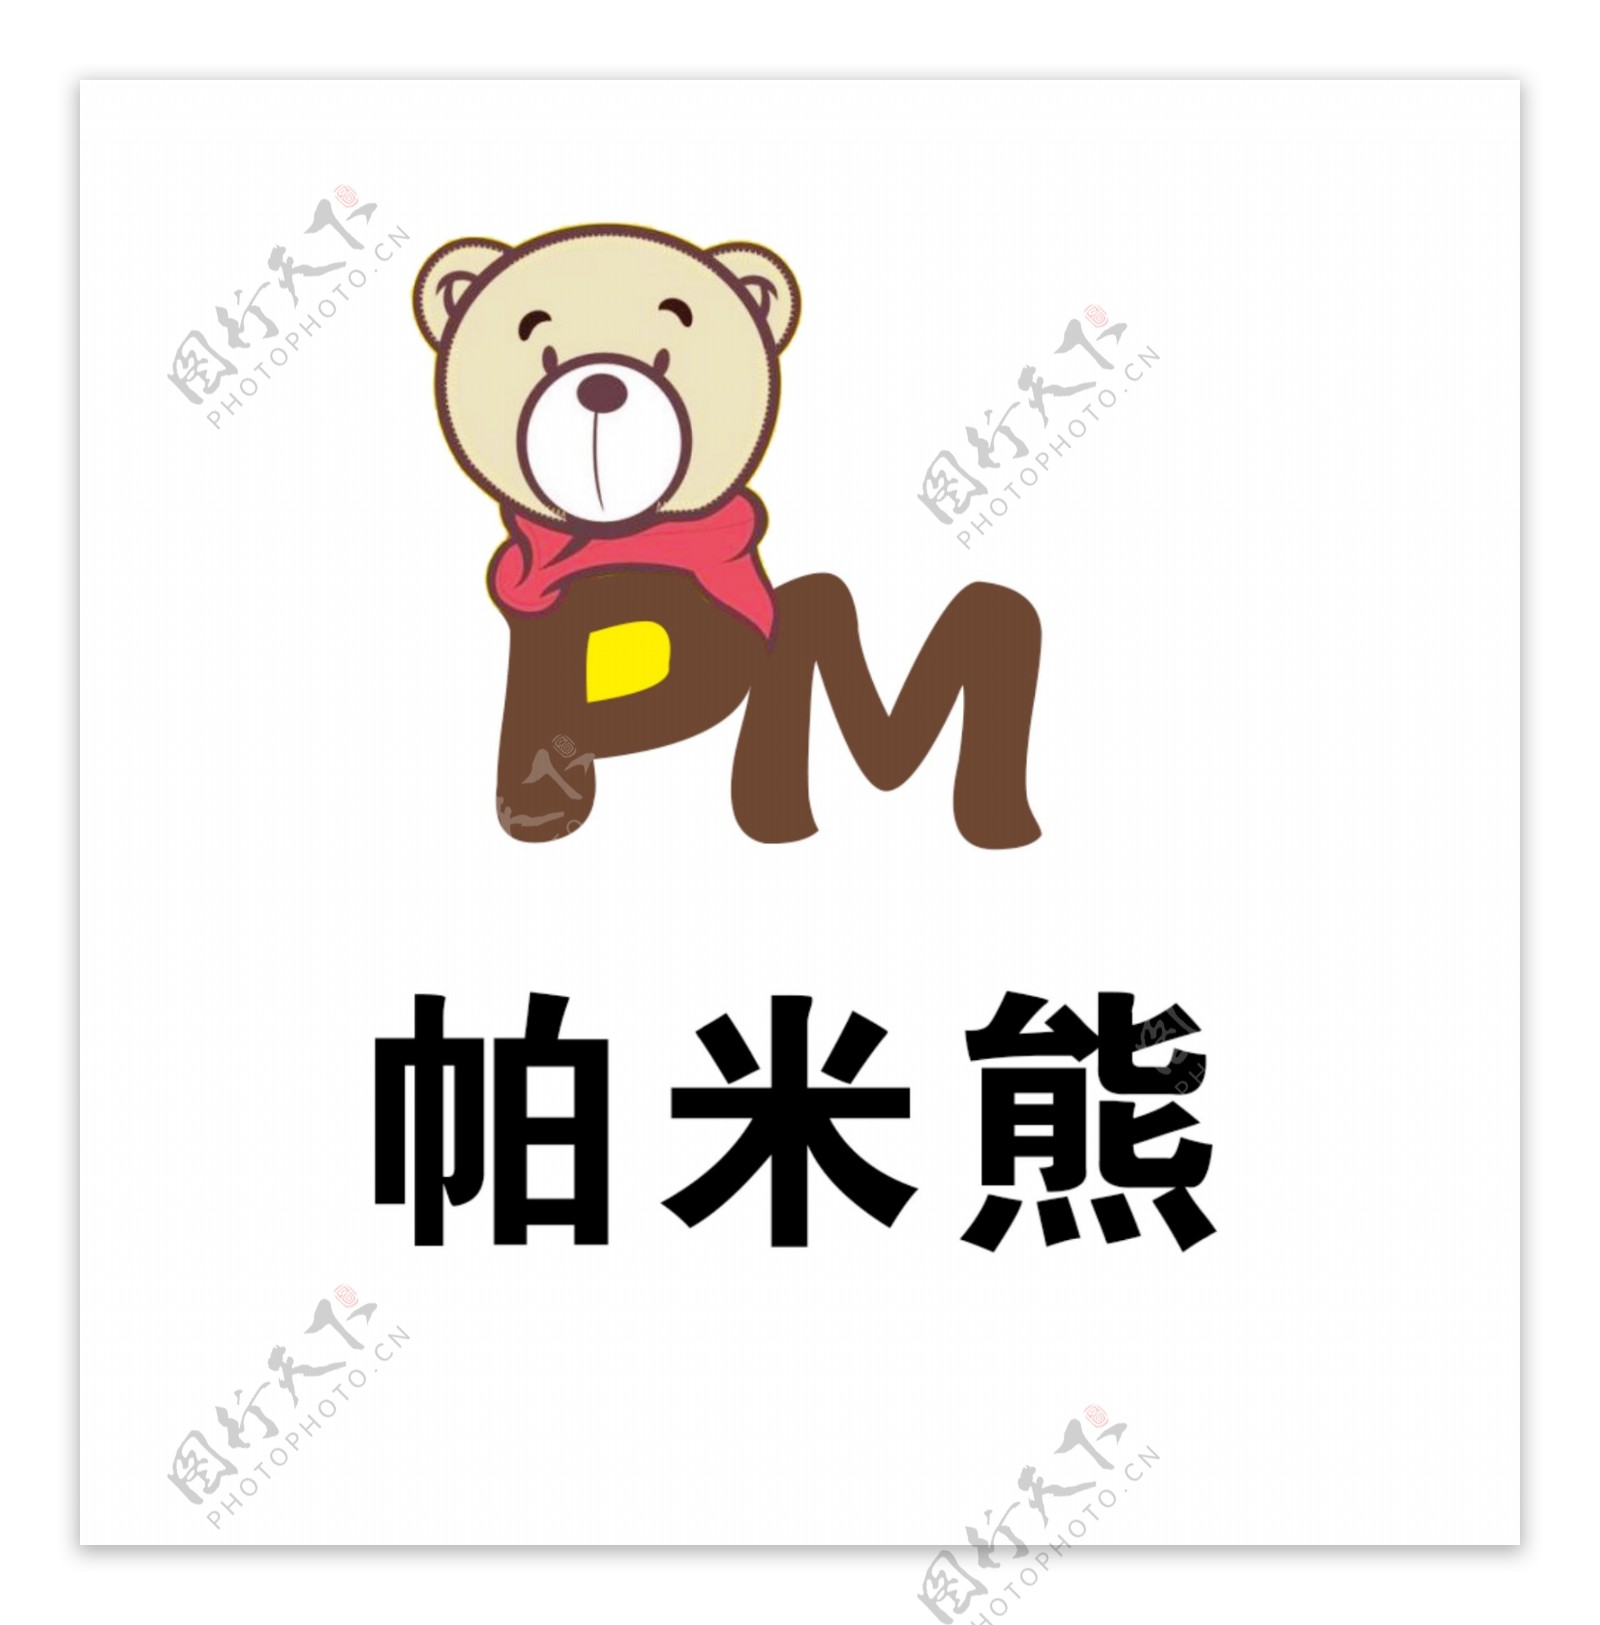 小熊卡通logo标志